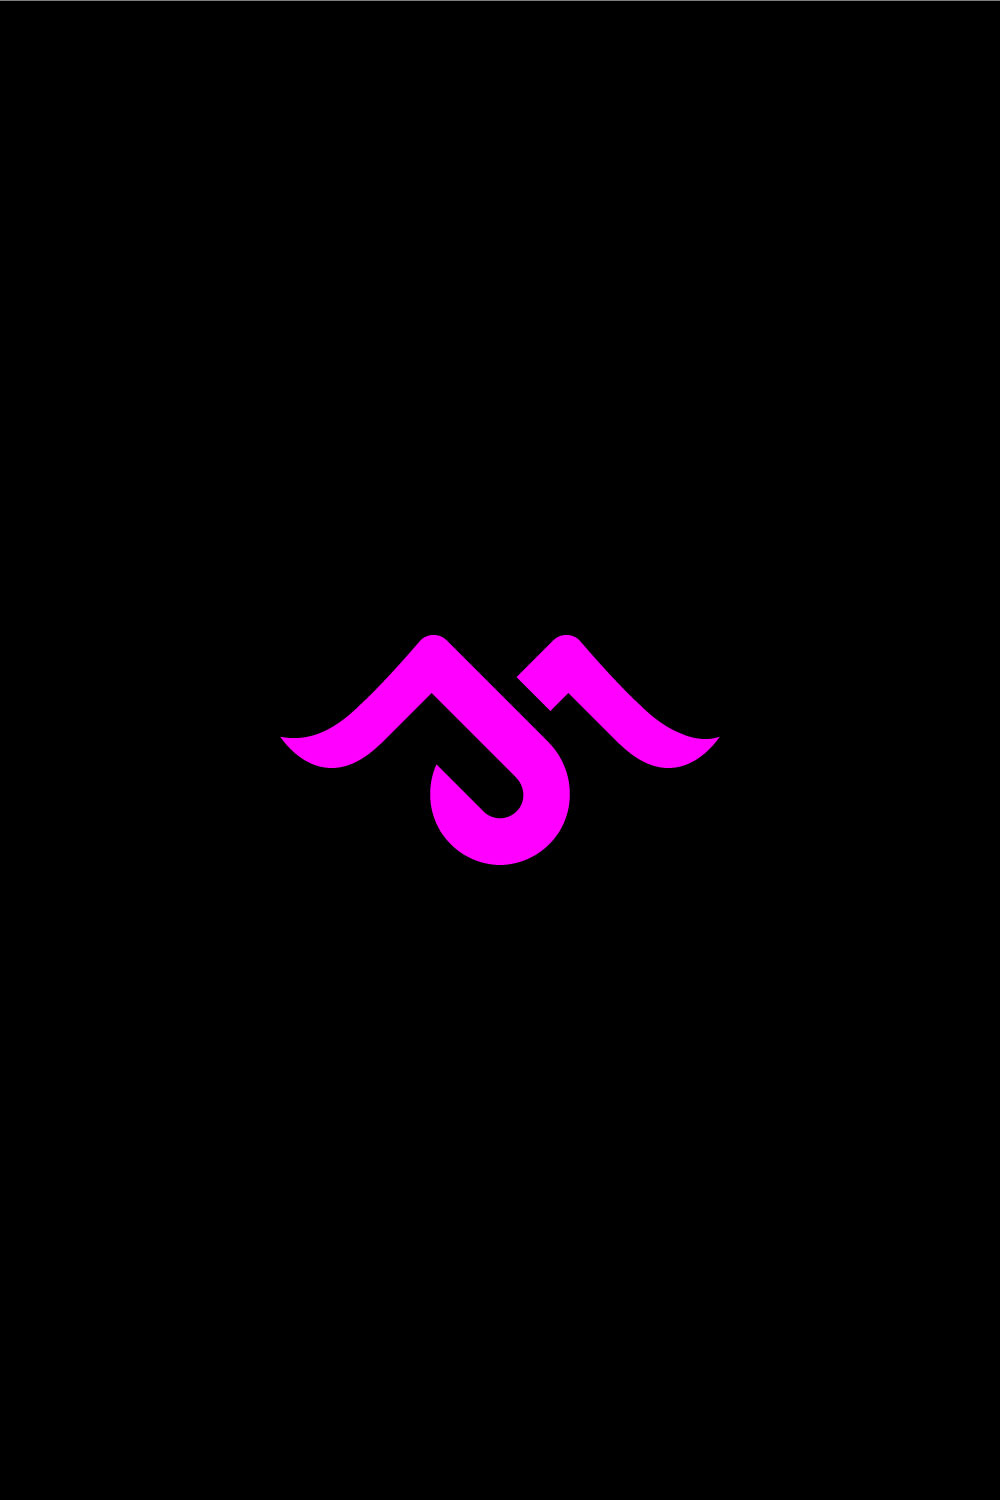 MJ Logo Design Pinterest image.